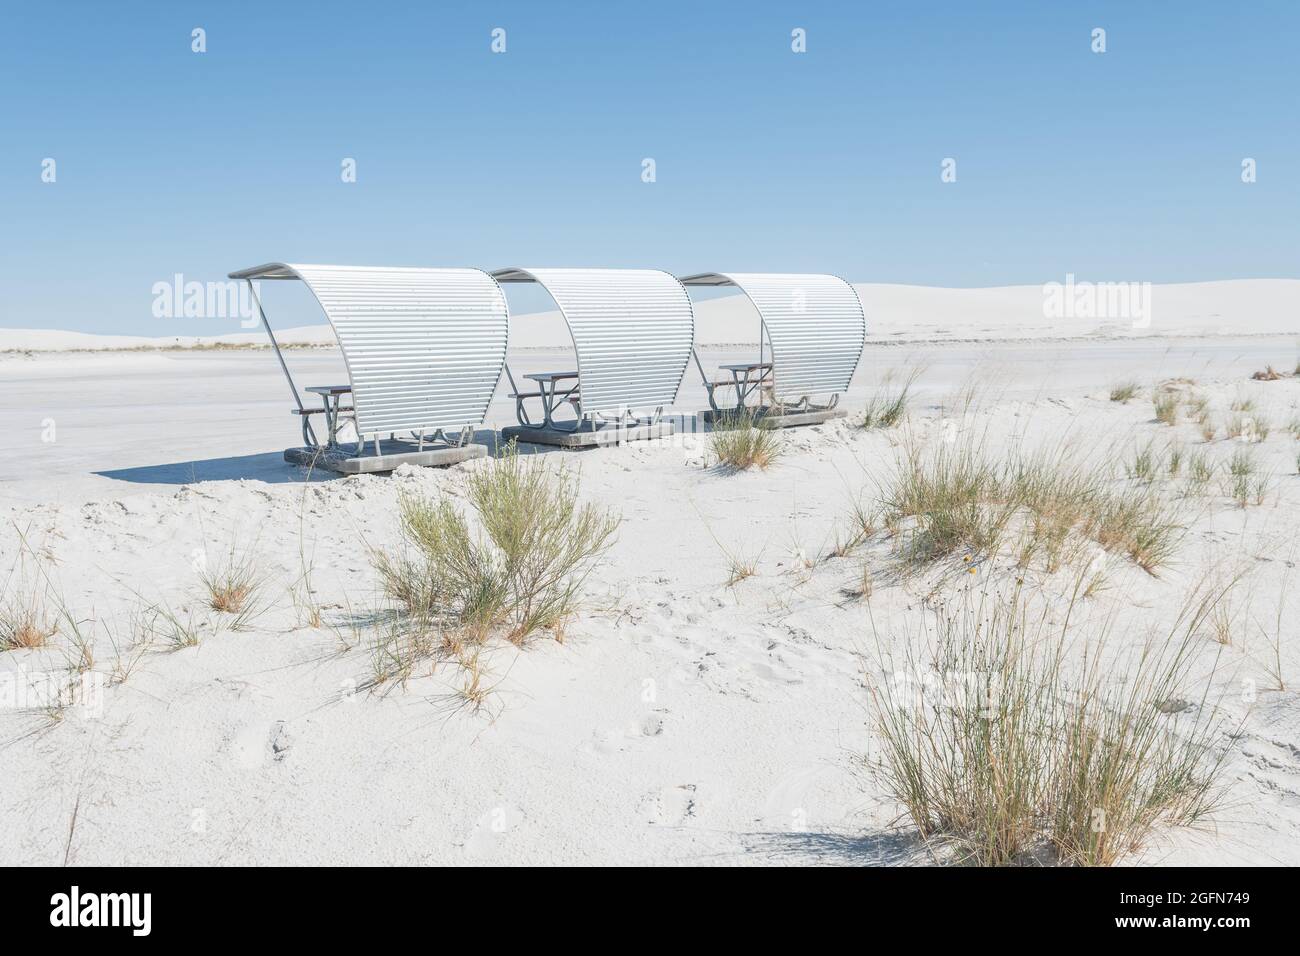 Parc national de White Sands, tables de pique-nique. Nouveau-Mexique, États-Unis Banque D'Images